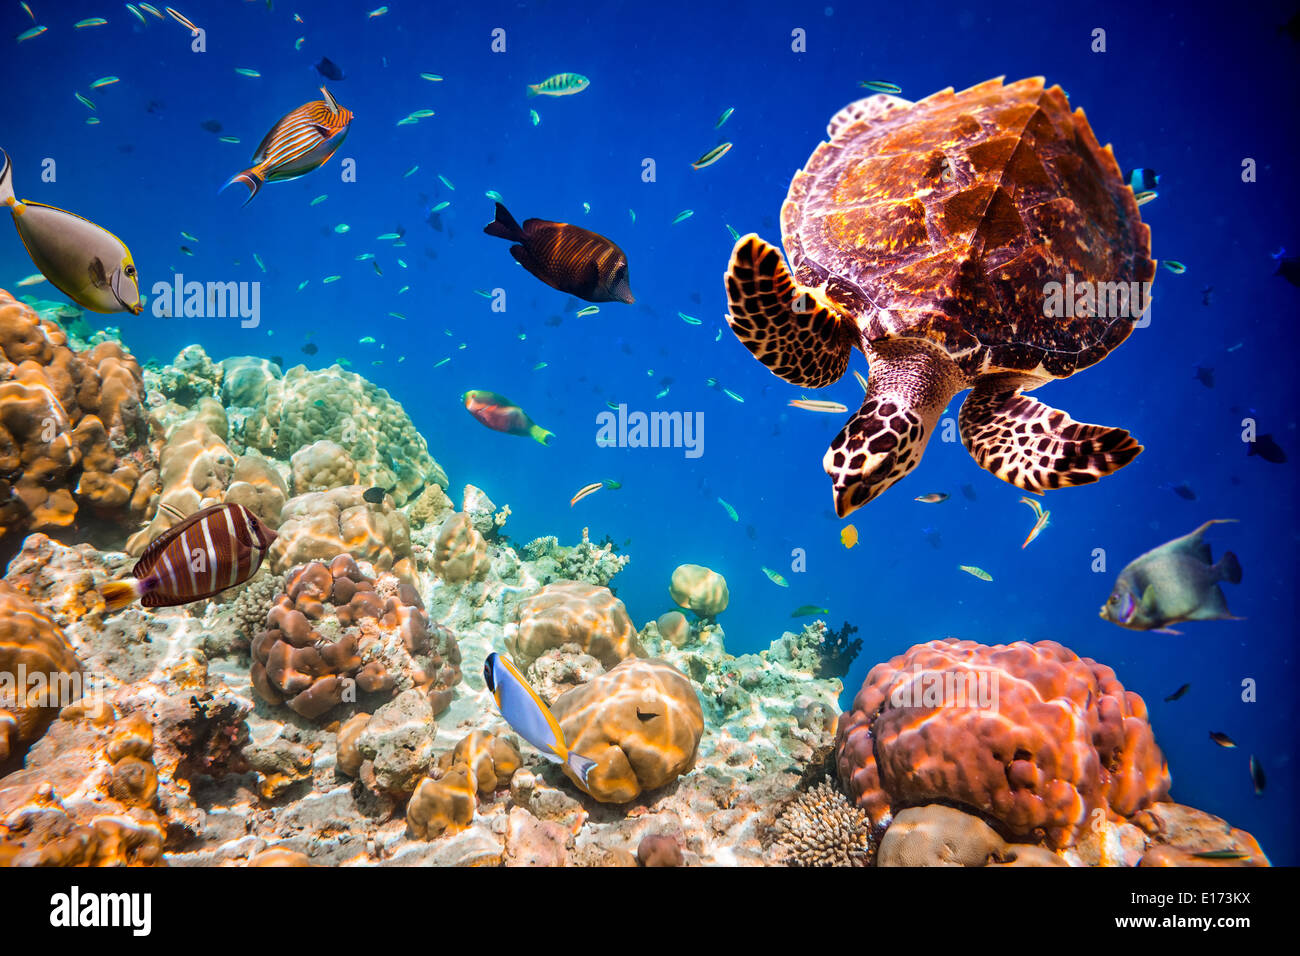 - Tortues Eretmochelys imbricata flotte sous l'eau. Maldives Océan Indien. Banque D'Images